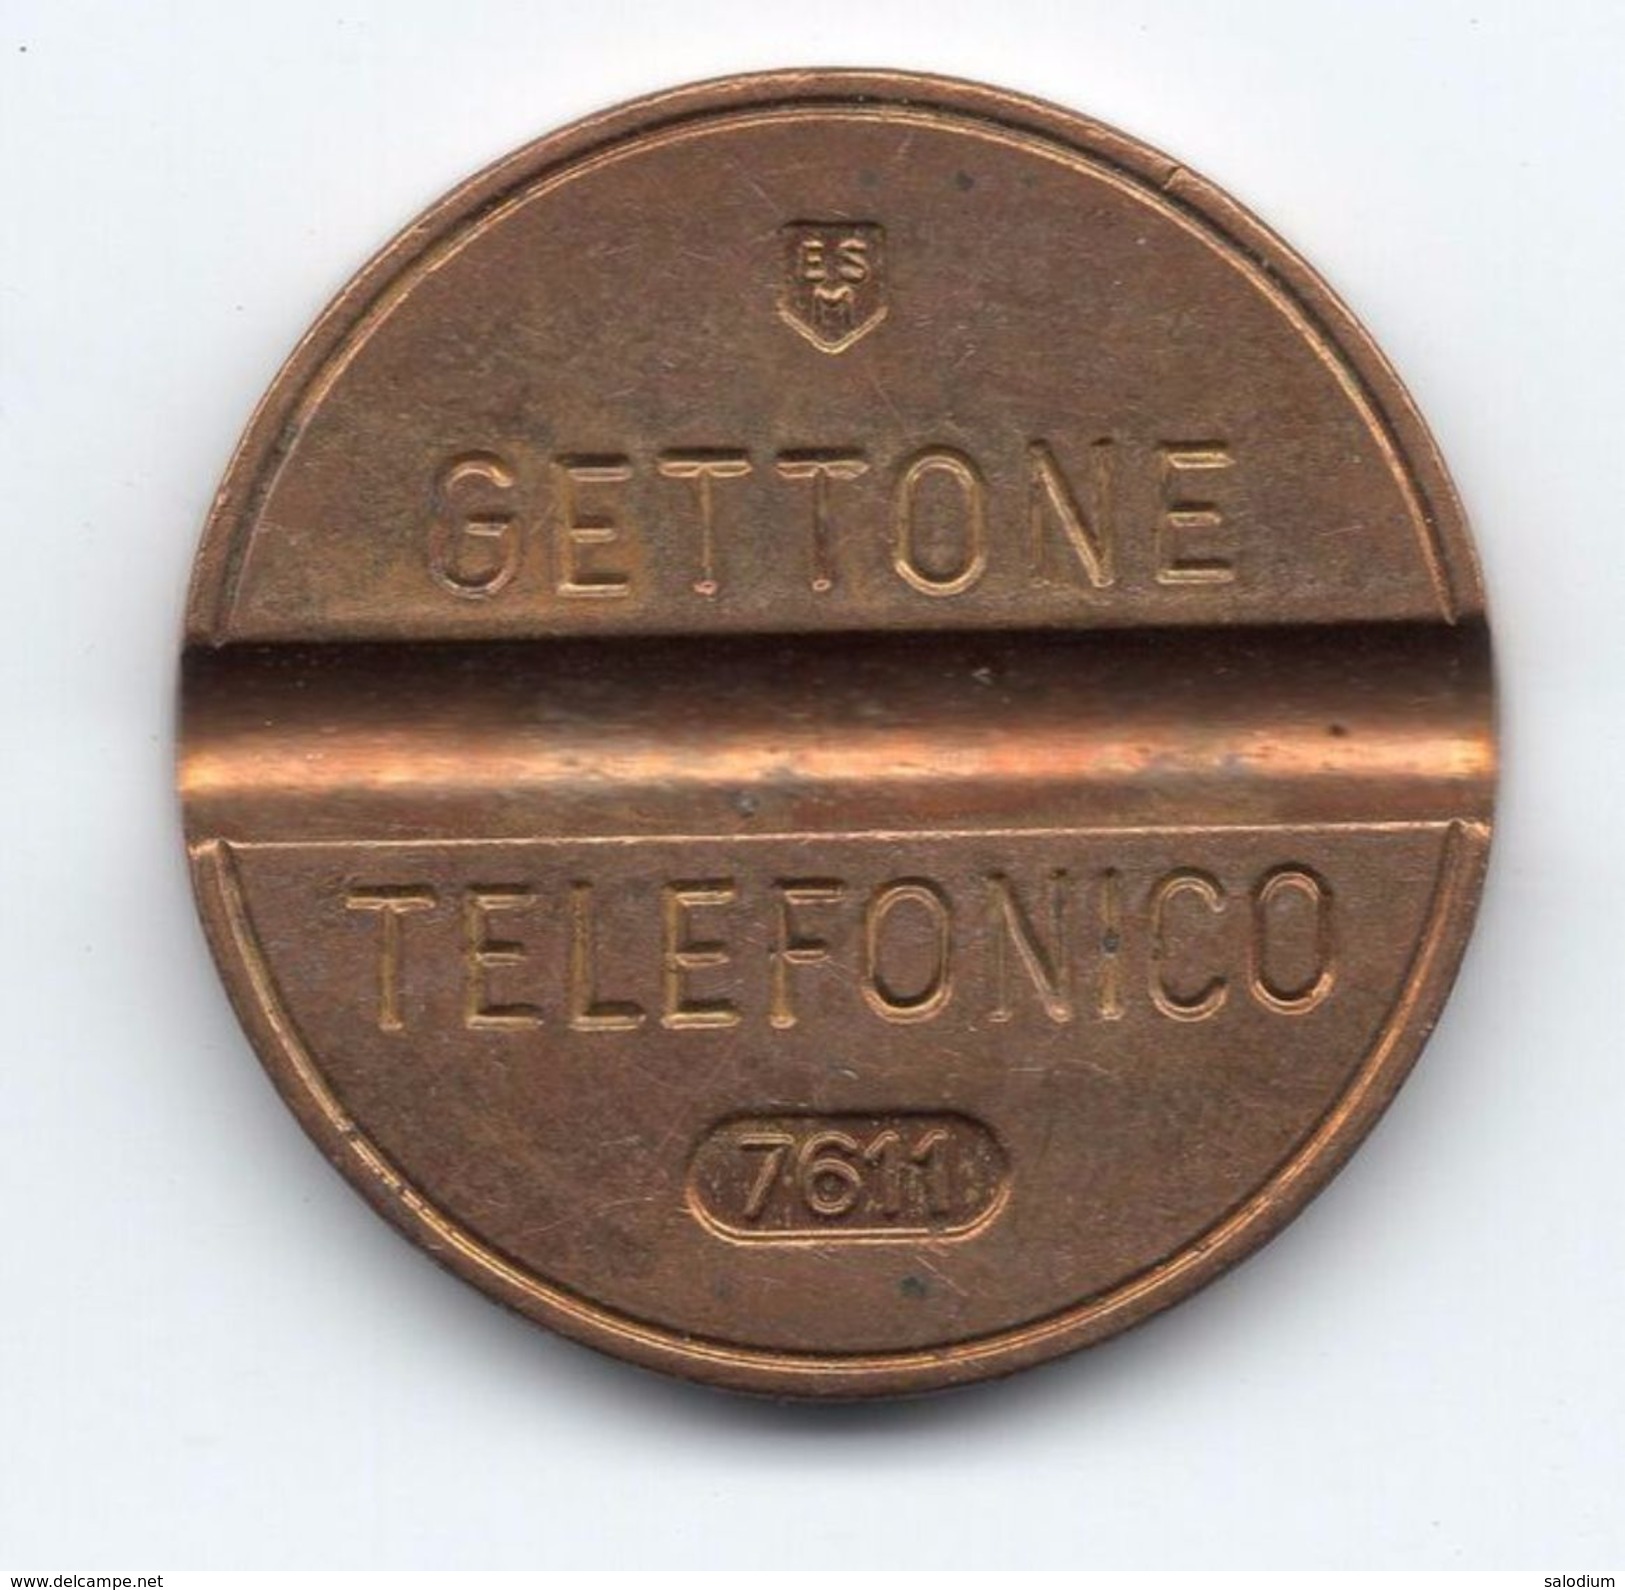 Gettone Telefonico 7611 Token Telephone - (Id-848) - Professionnels/De Société